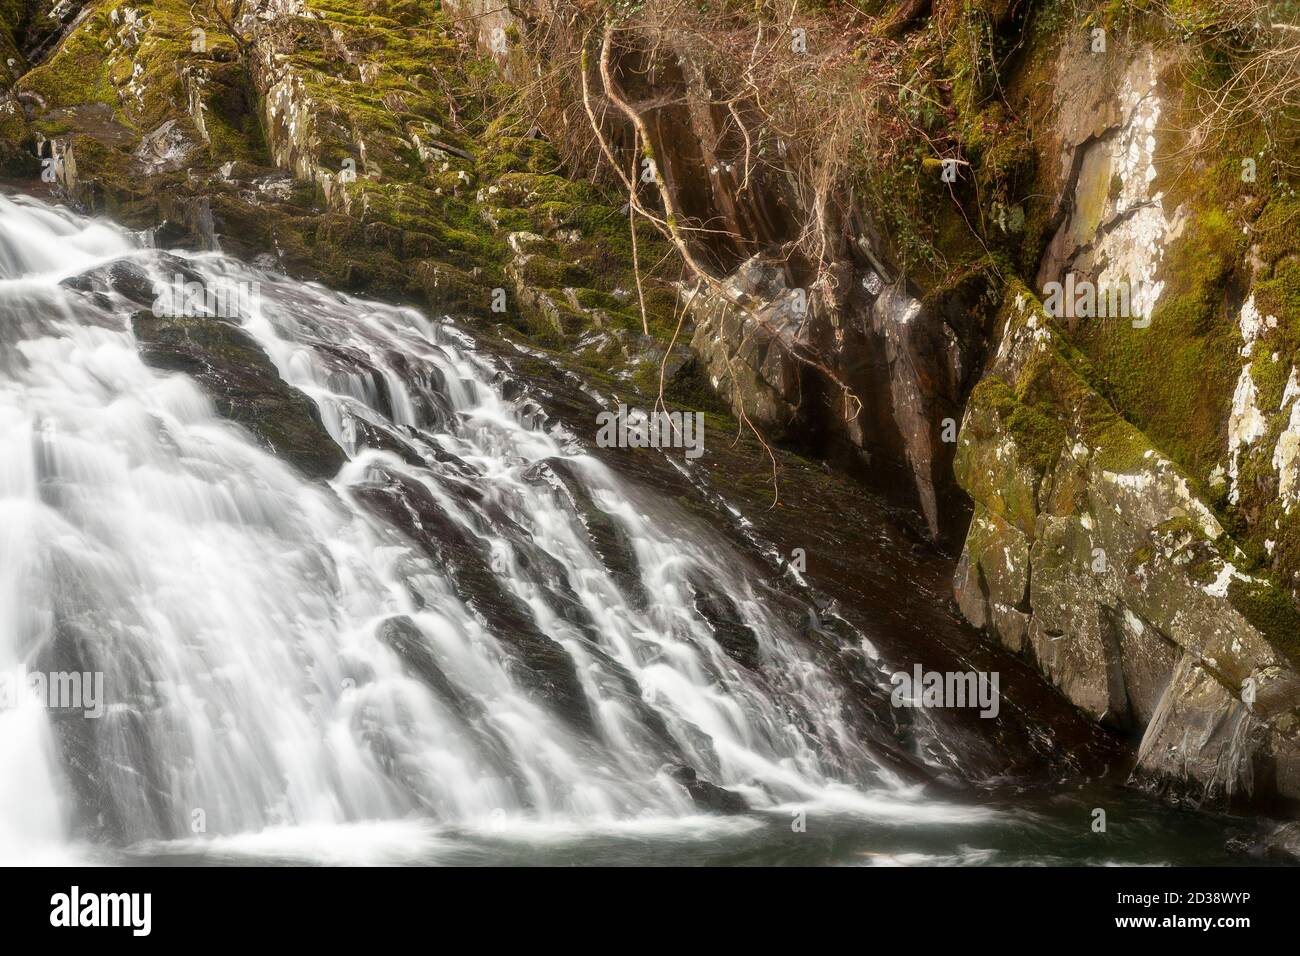 Swallow Falls waterfall, Snowdonia, North Wales Stock Photo